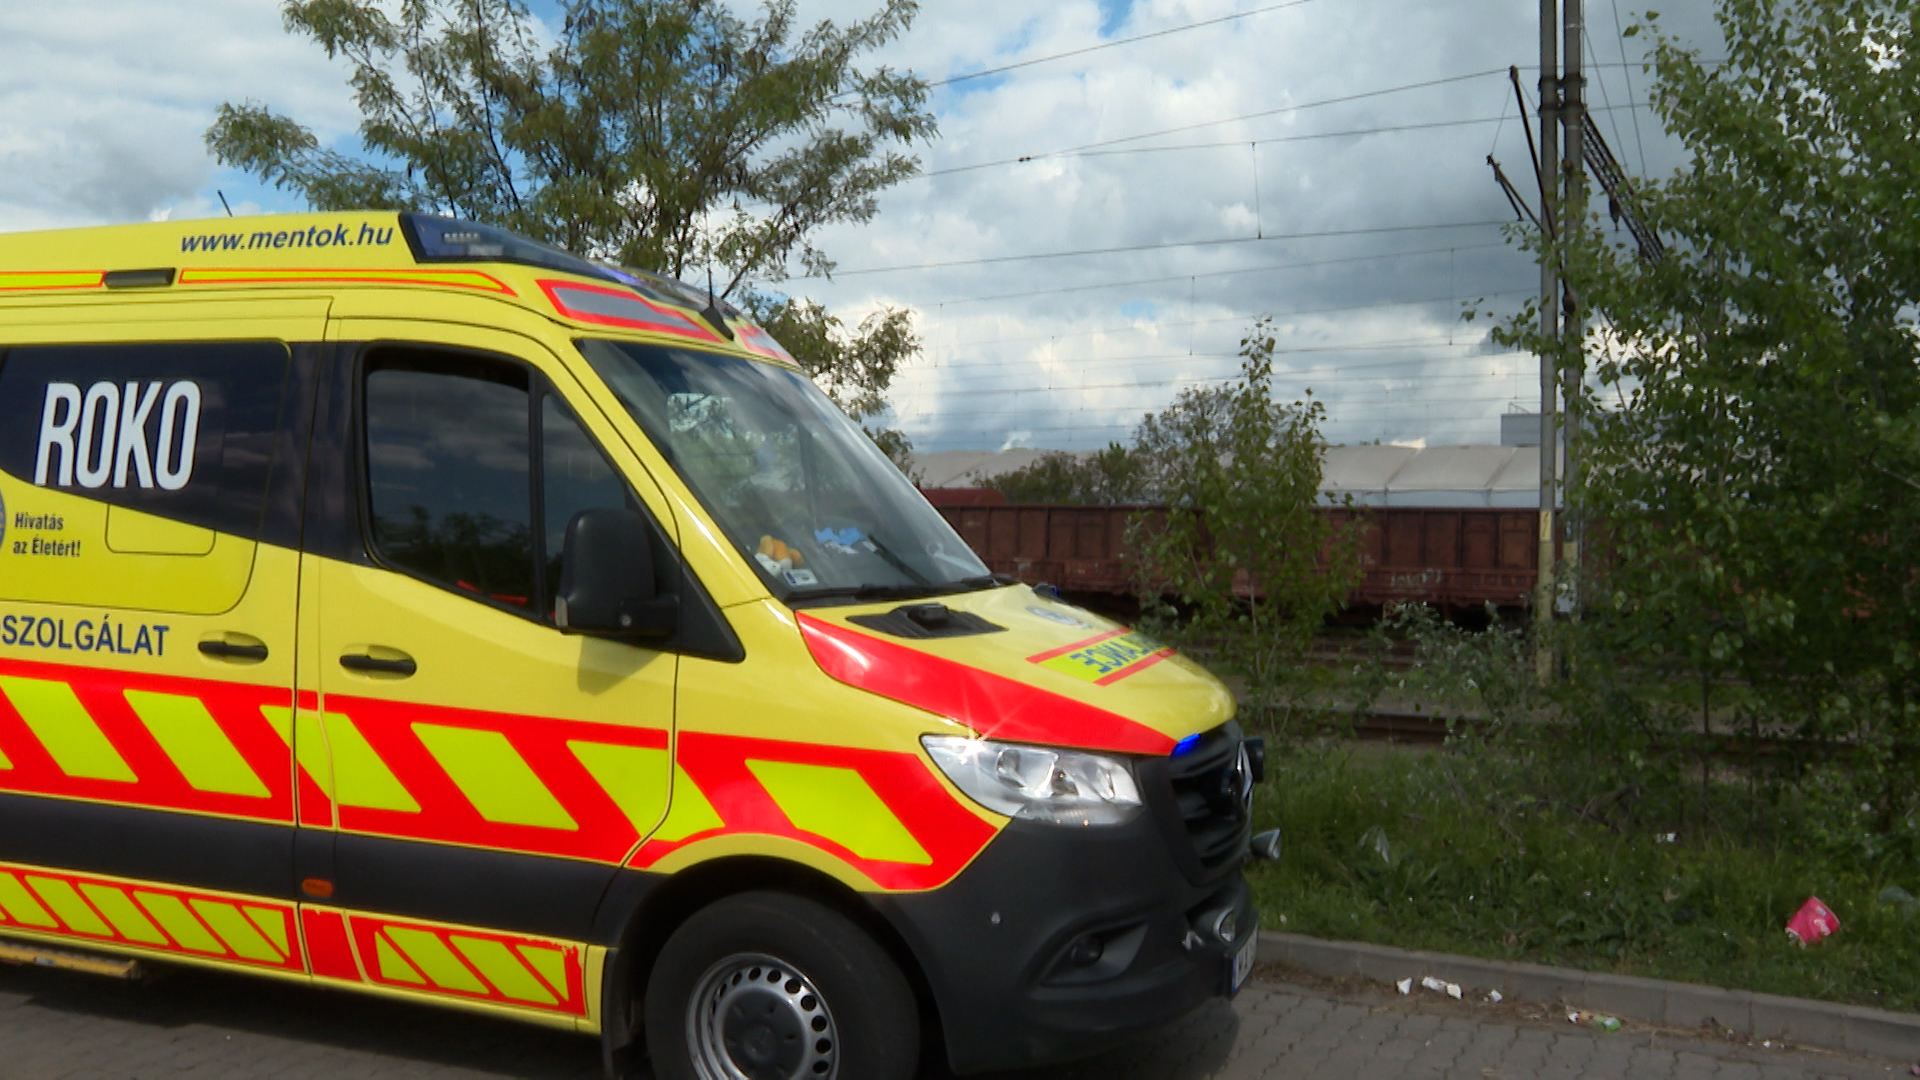 Súlyos áramütés ért egy középiskolás fiút az egri pályaudvaron, életveszélyes állapotban mentőhelikopterrel vitték kórházba